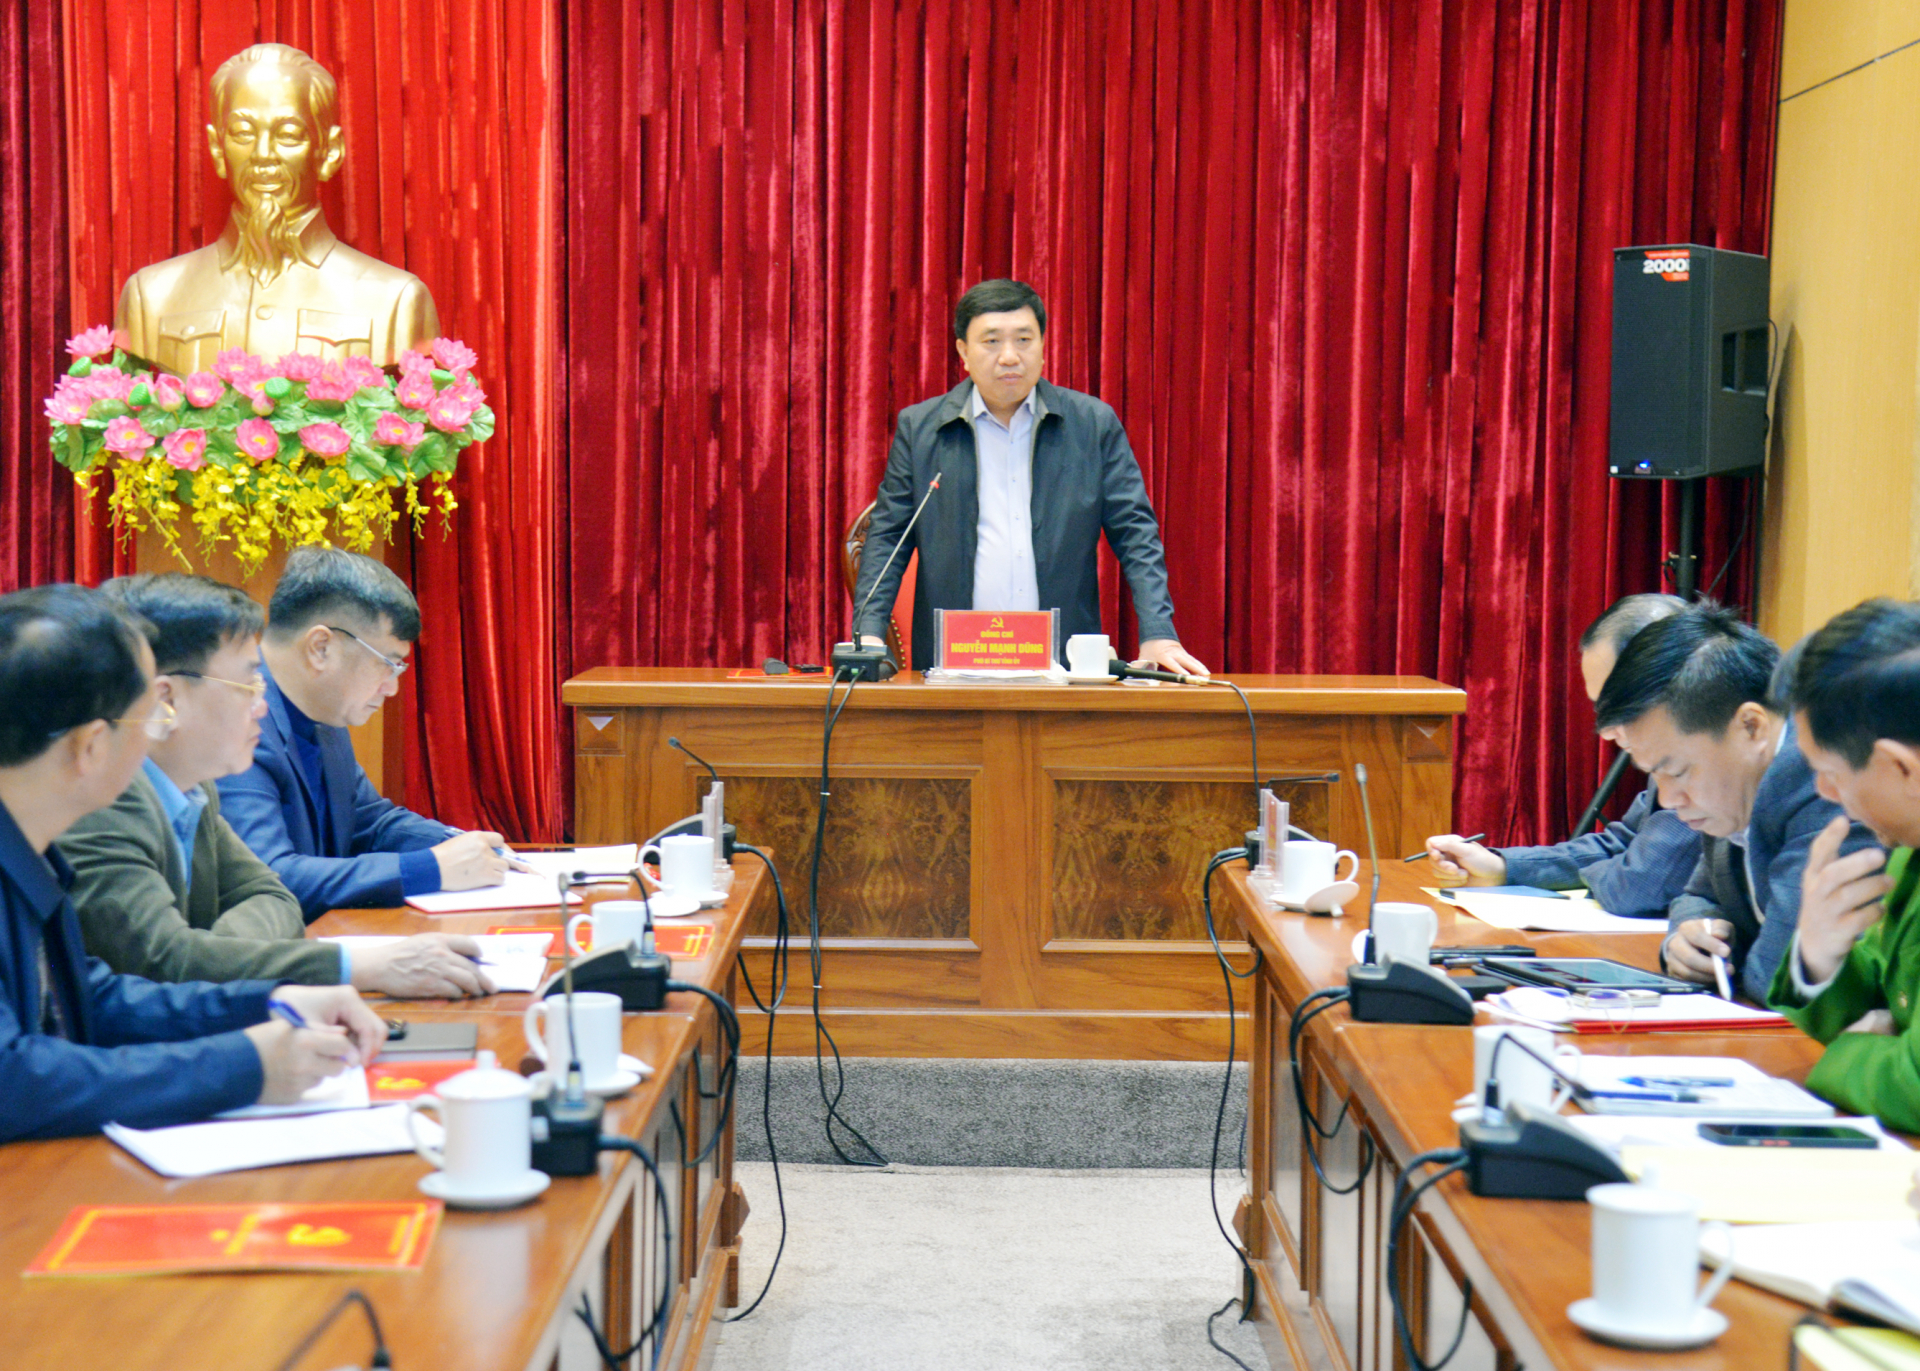 Phó Bí thư Tỉnh ủy Nguyễn Mạnh Dũng phát biểu kết luận buổi làm việc.